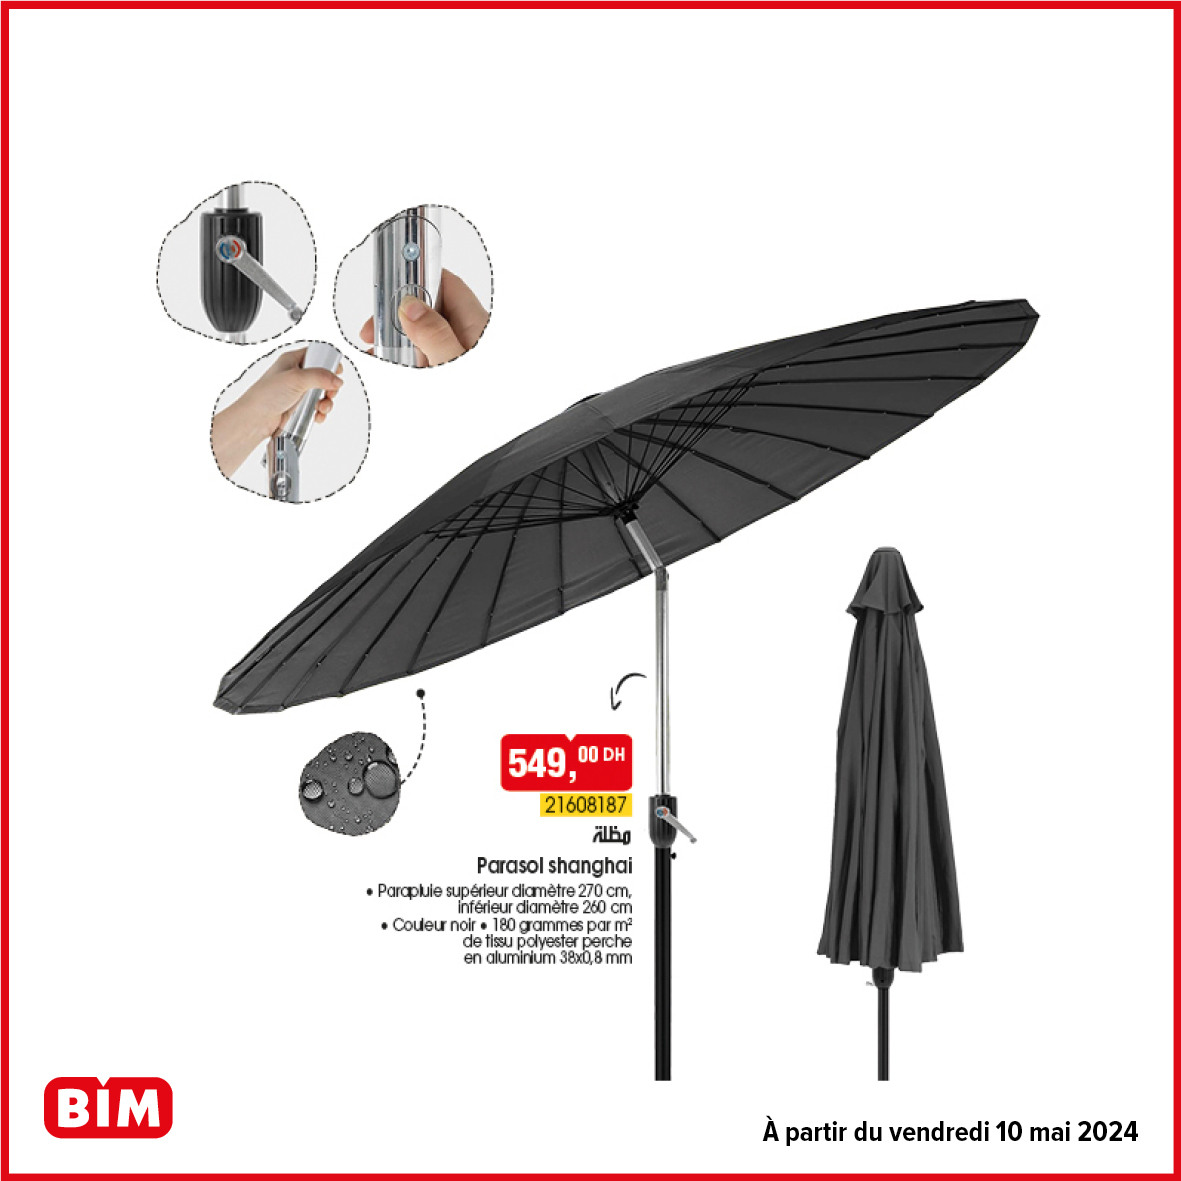 promotion bim 10 mai 2024 - parasol shaghai